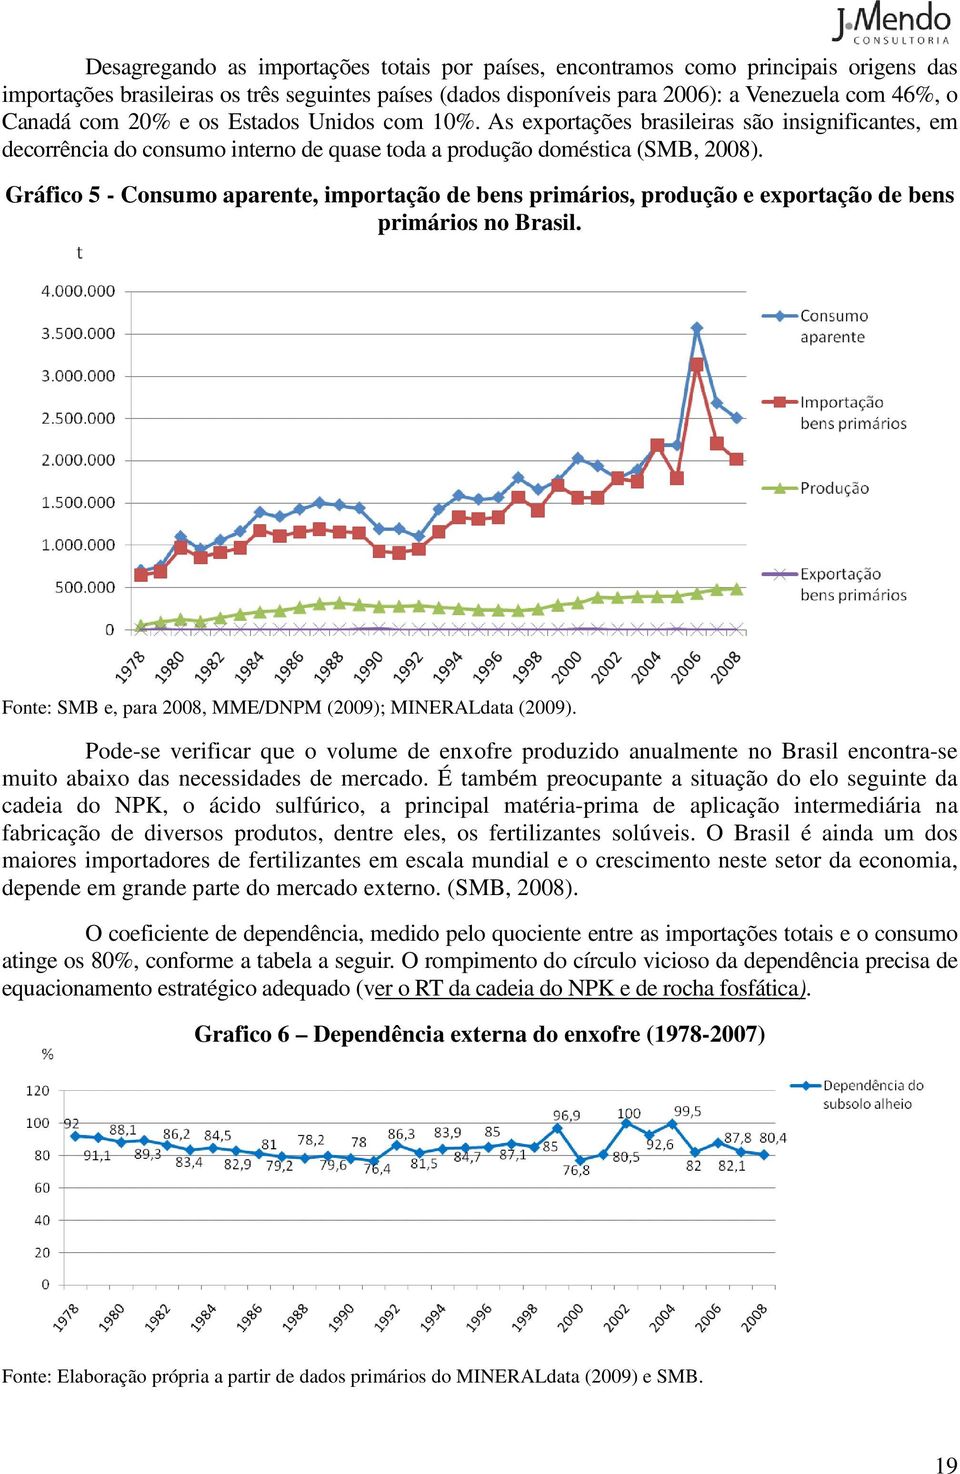 Gráfico 5 - Consumo aparente, importação de bens primários, produção e exportação de bens primários no Brasil. Fonte: SMB e, para 8, MME/DNPM (9); MINERALdata (9).